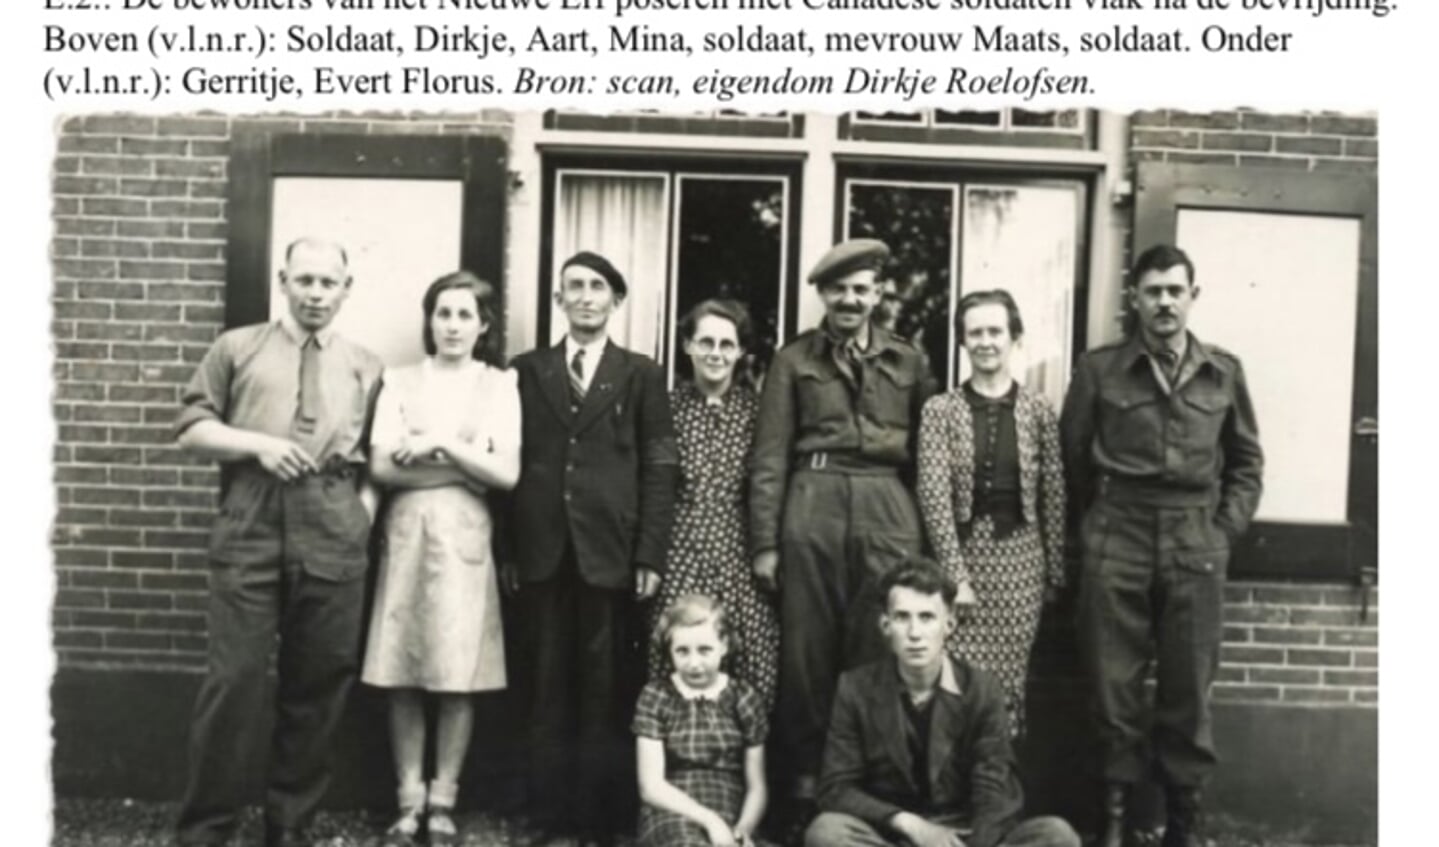 De bewoners van het Nieuwe Erf met Canadese militairen, vlak na de bevrijding. Tweede van links Dirkje Roelofsen, naast haar haar vader Aart en in het midden haar moeder Mina.